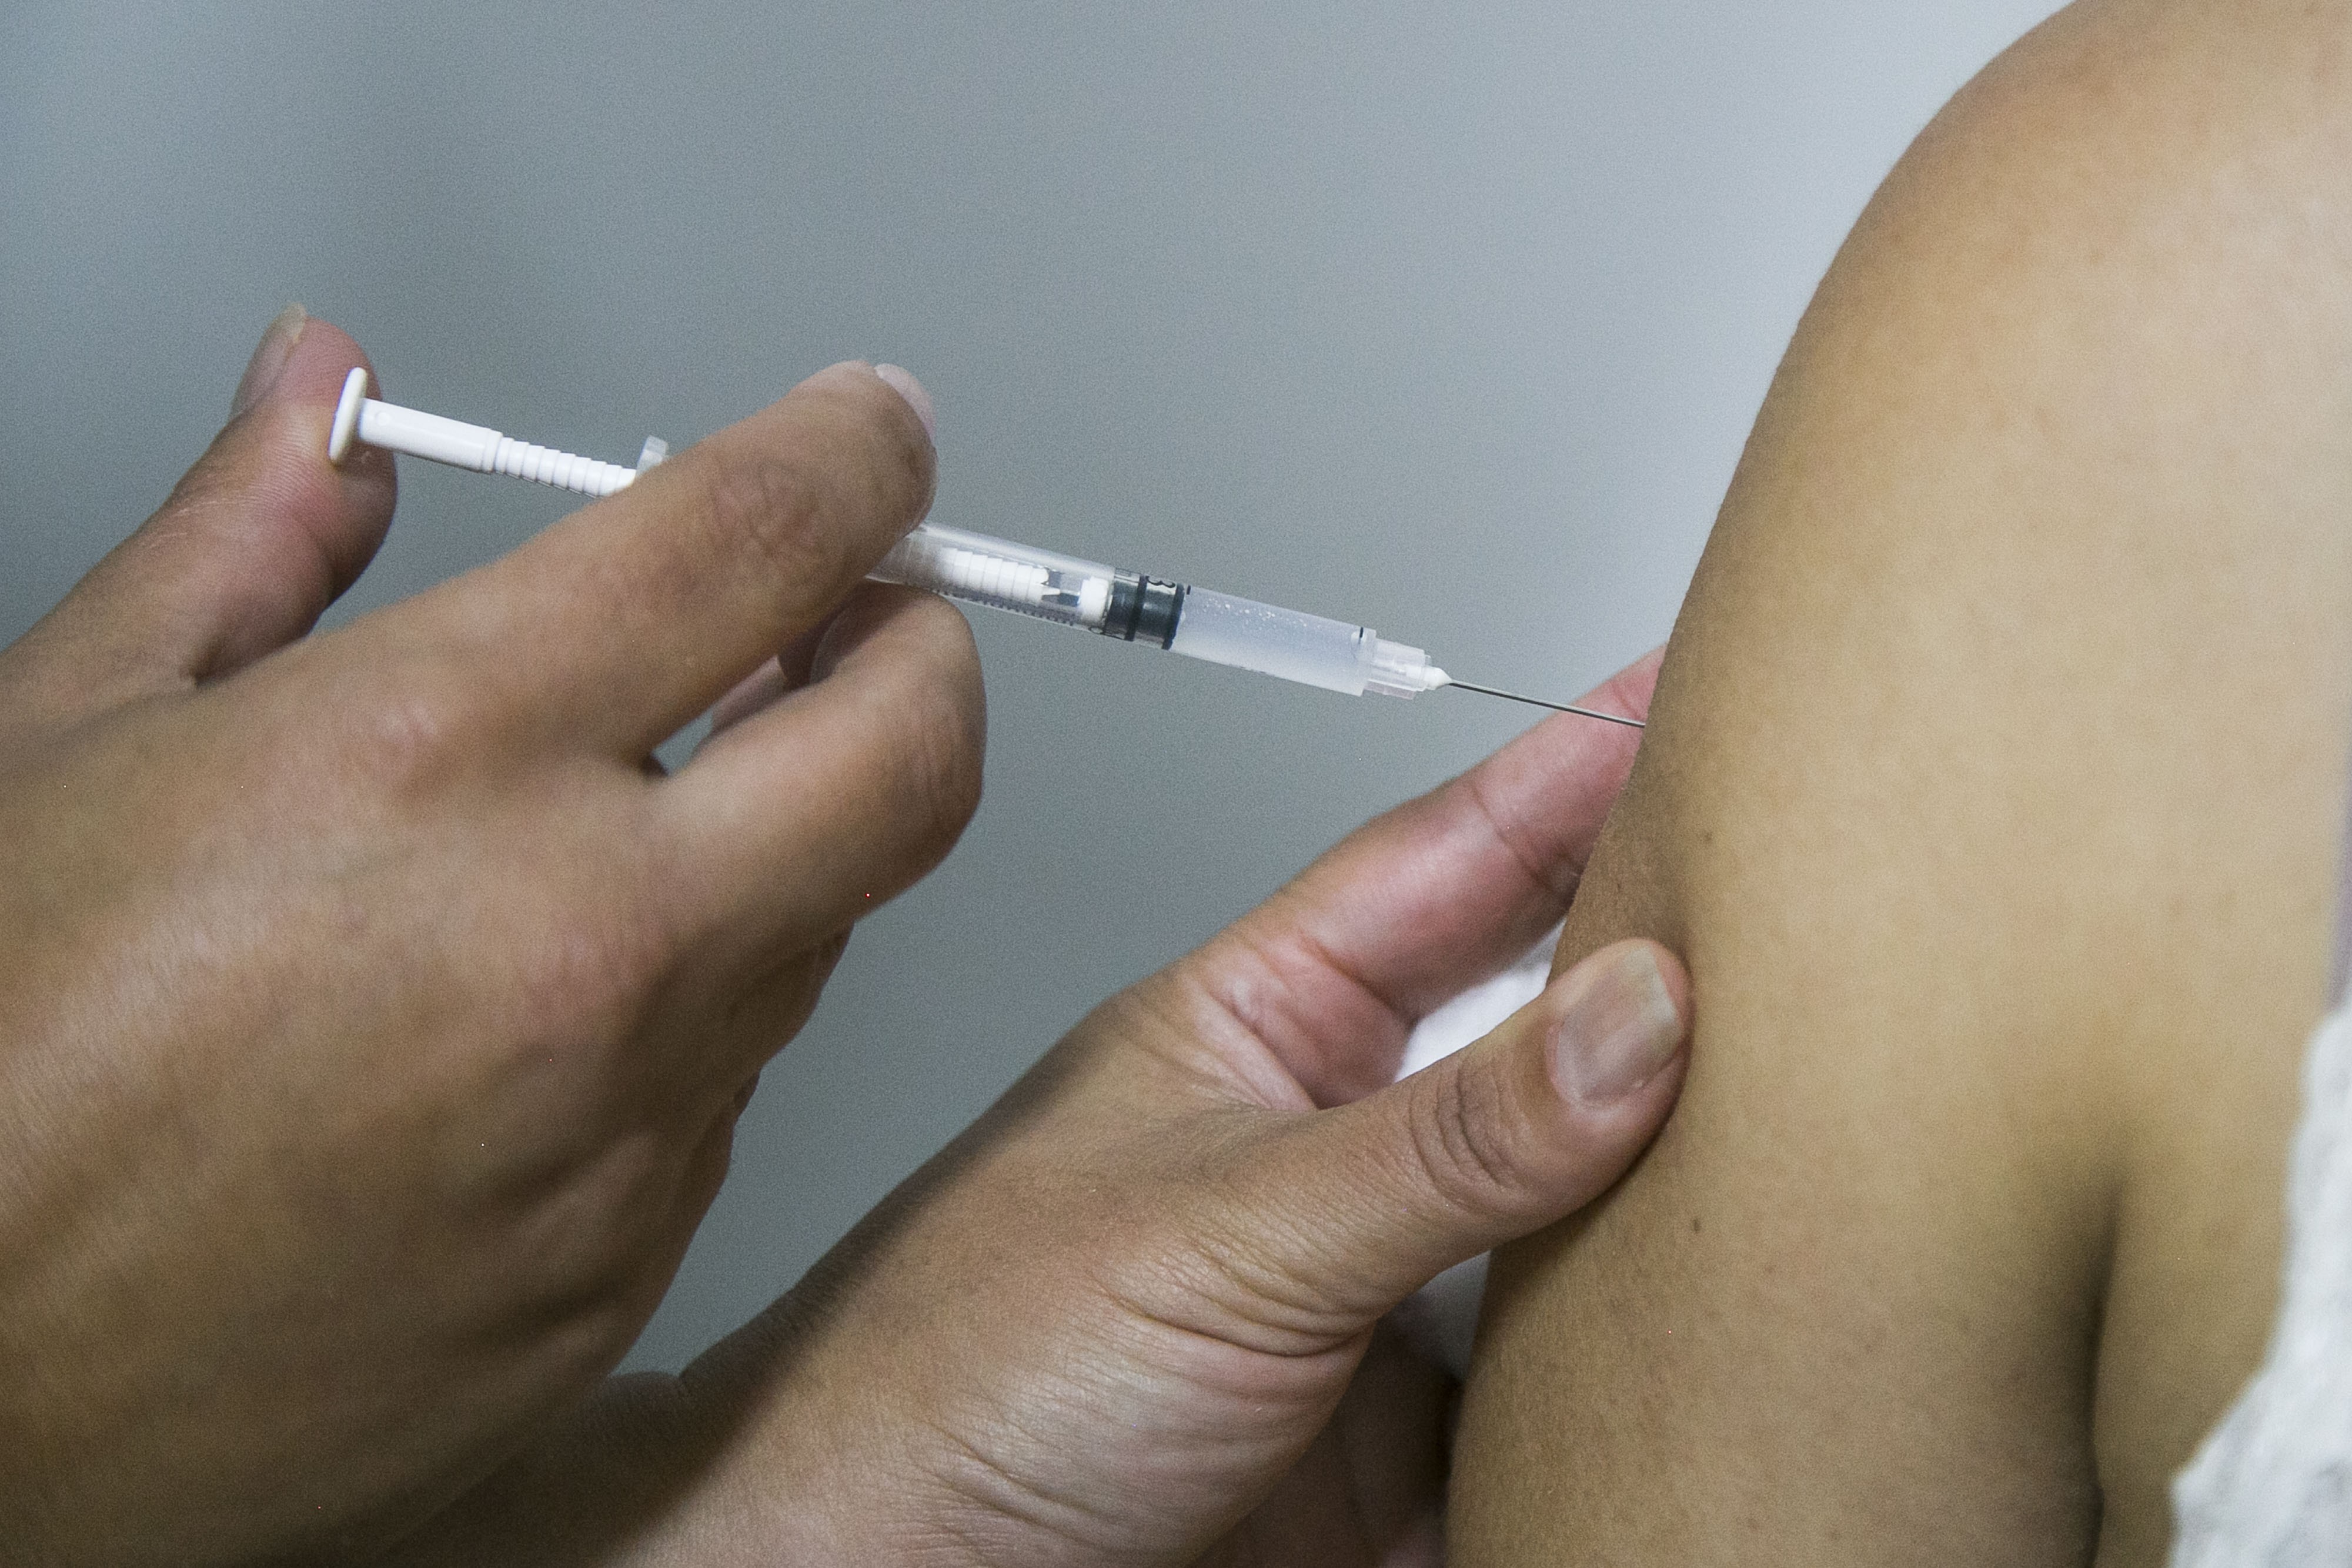 Gripe, tétano e hepatite A: especialistas recomendam vacinas para quem está no RS